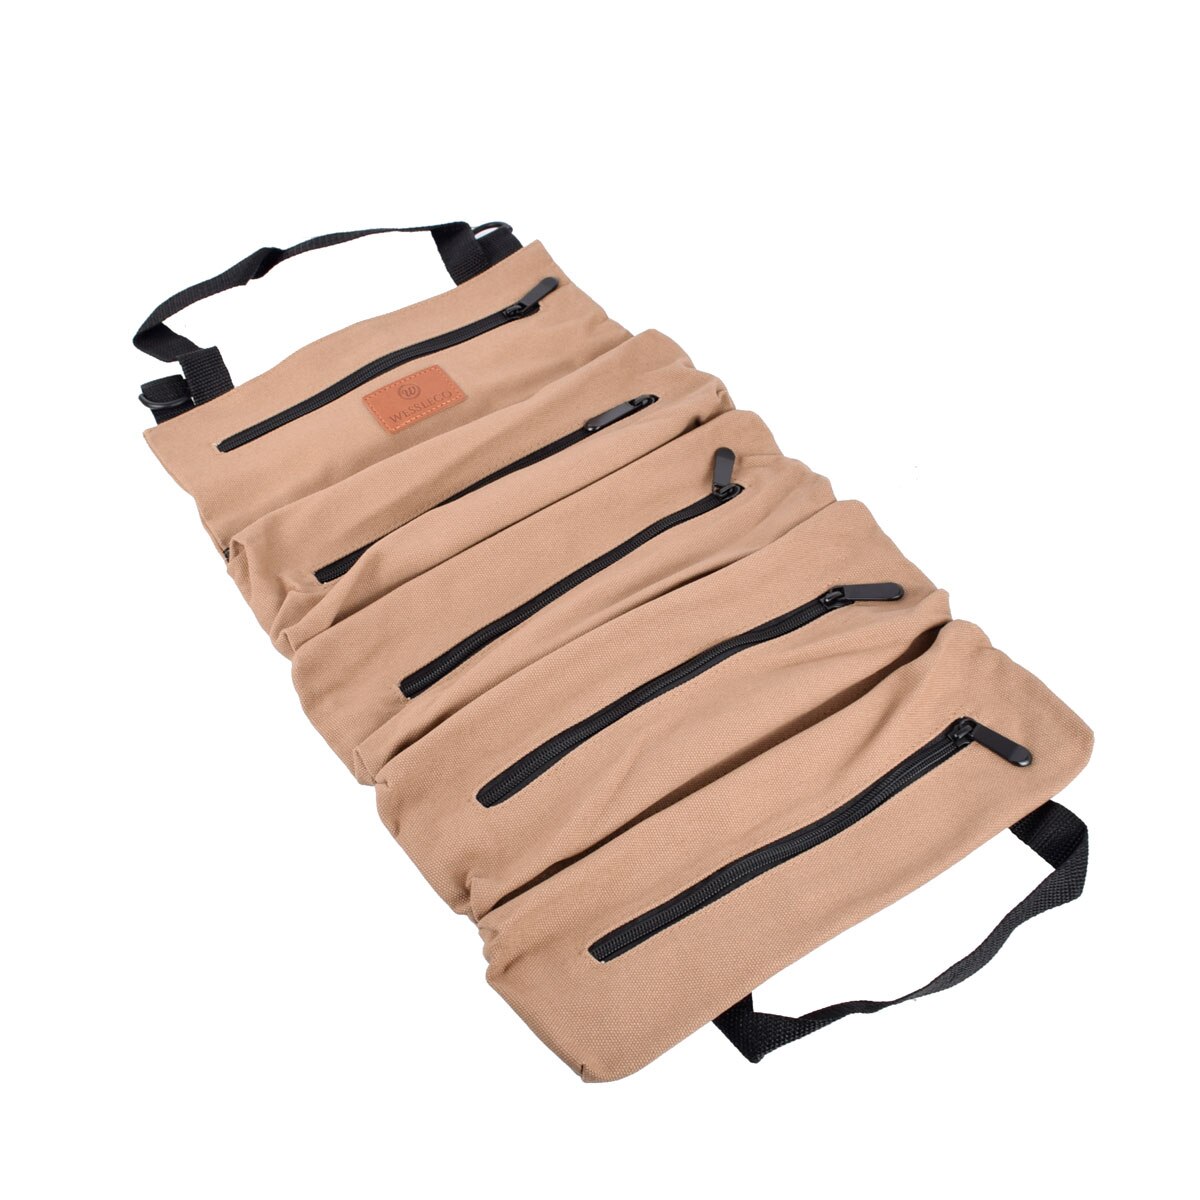 Rulleværktøj rulle multifunktionsværktøj rulle op taske skruenøgle rullepose hængende værktøj lynlås bæretaske